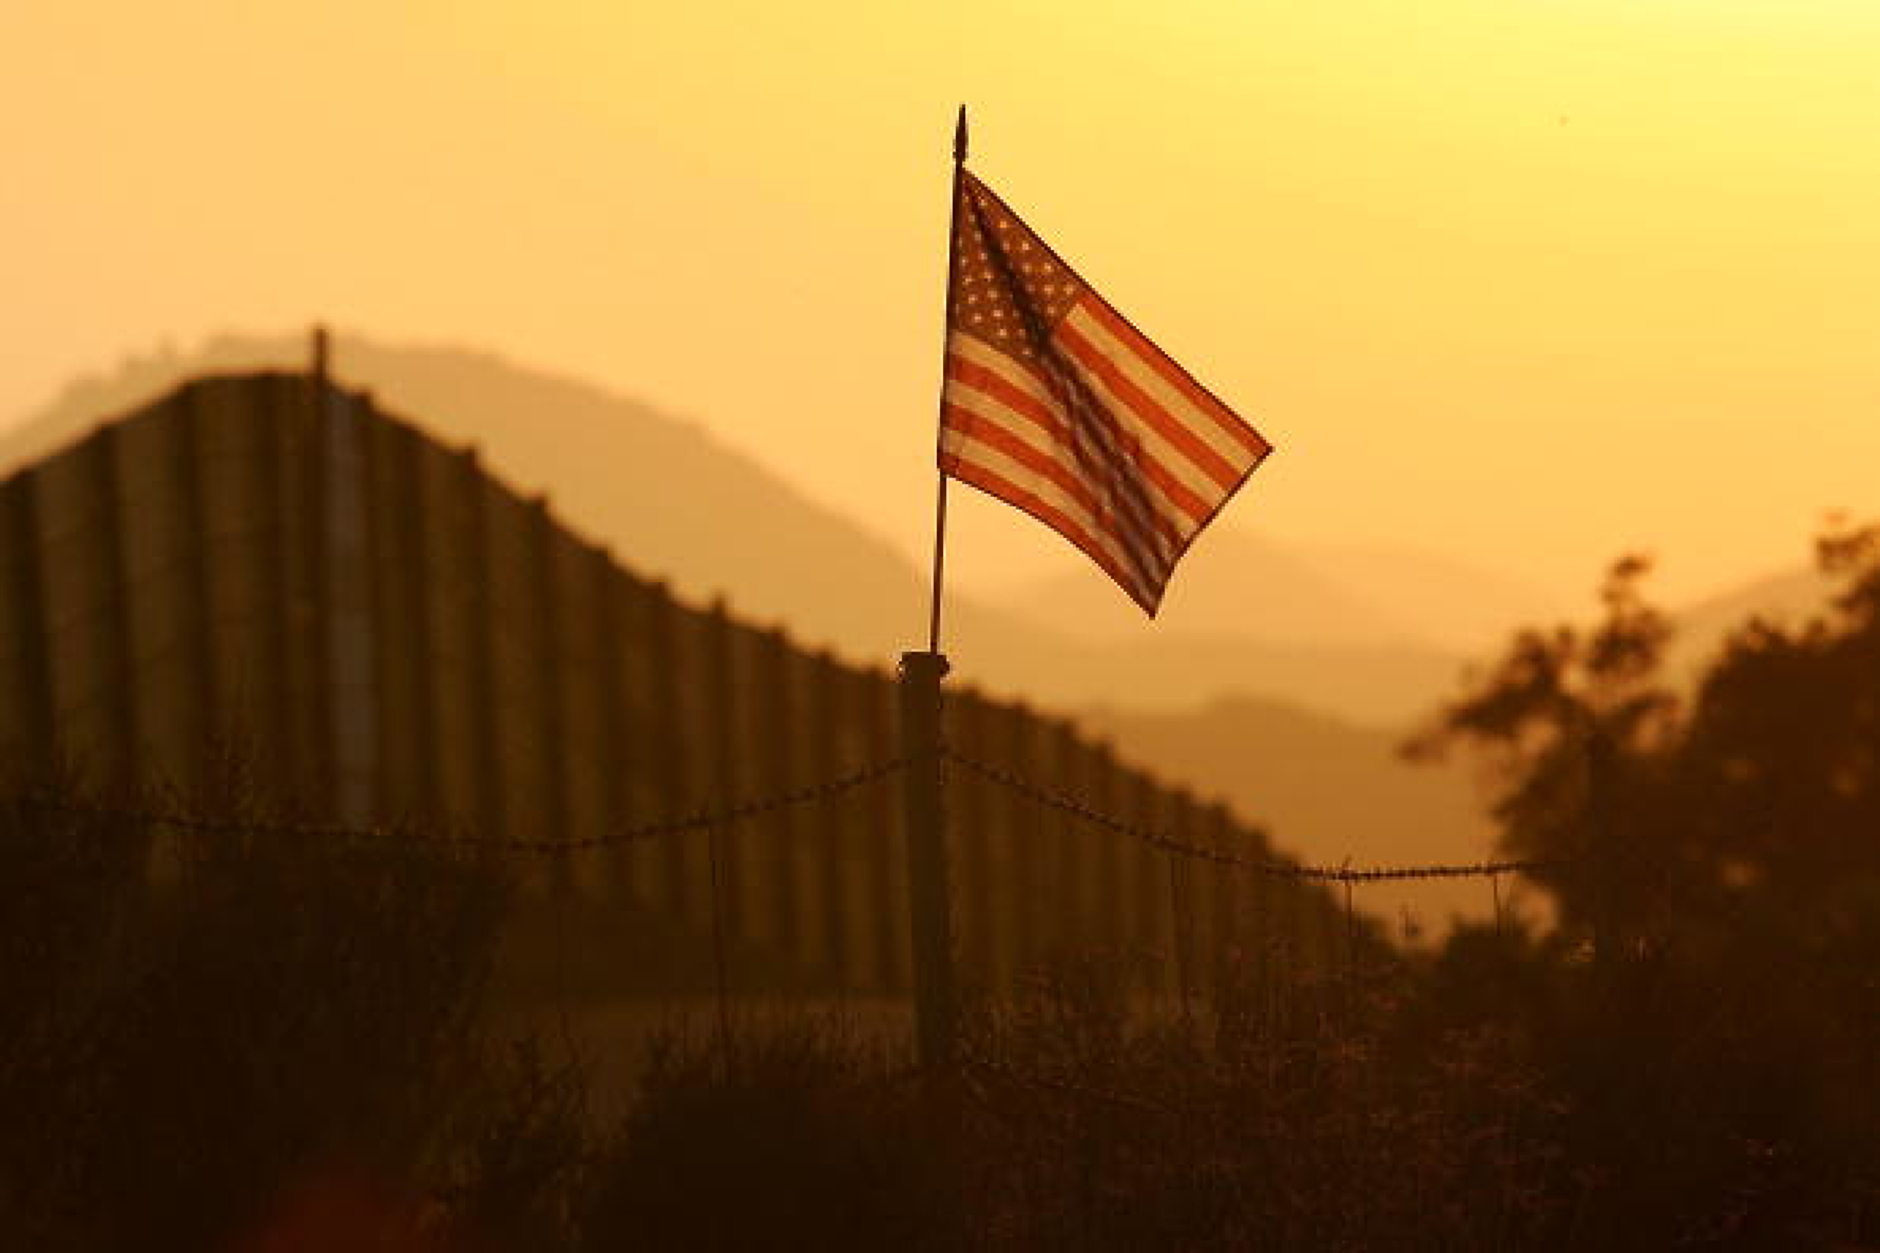 Републиканка предложи лазери да спират мигрантите по границата на САЩ 